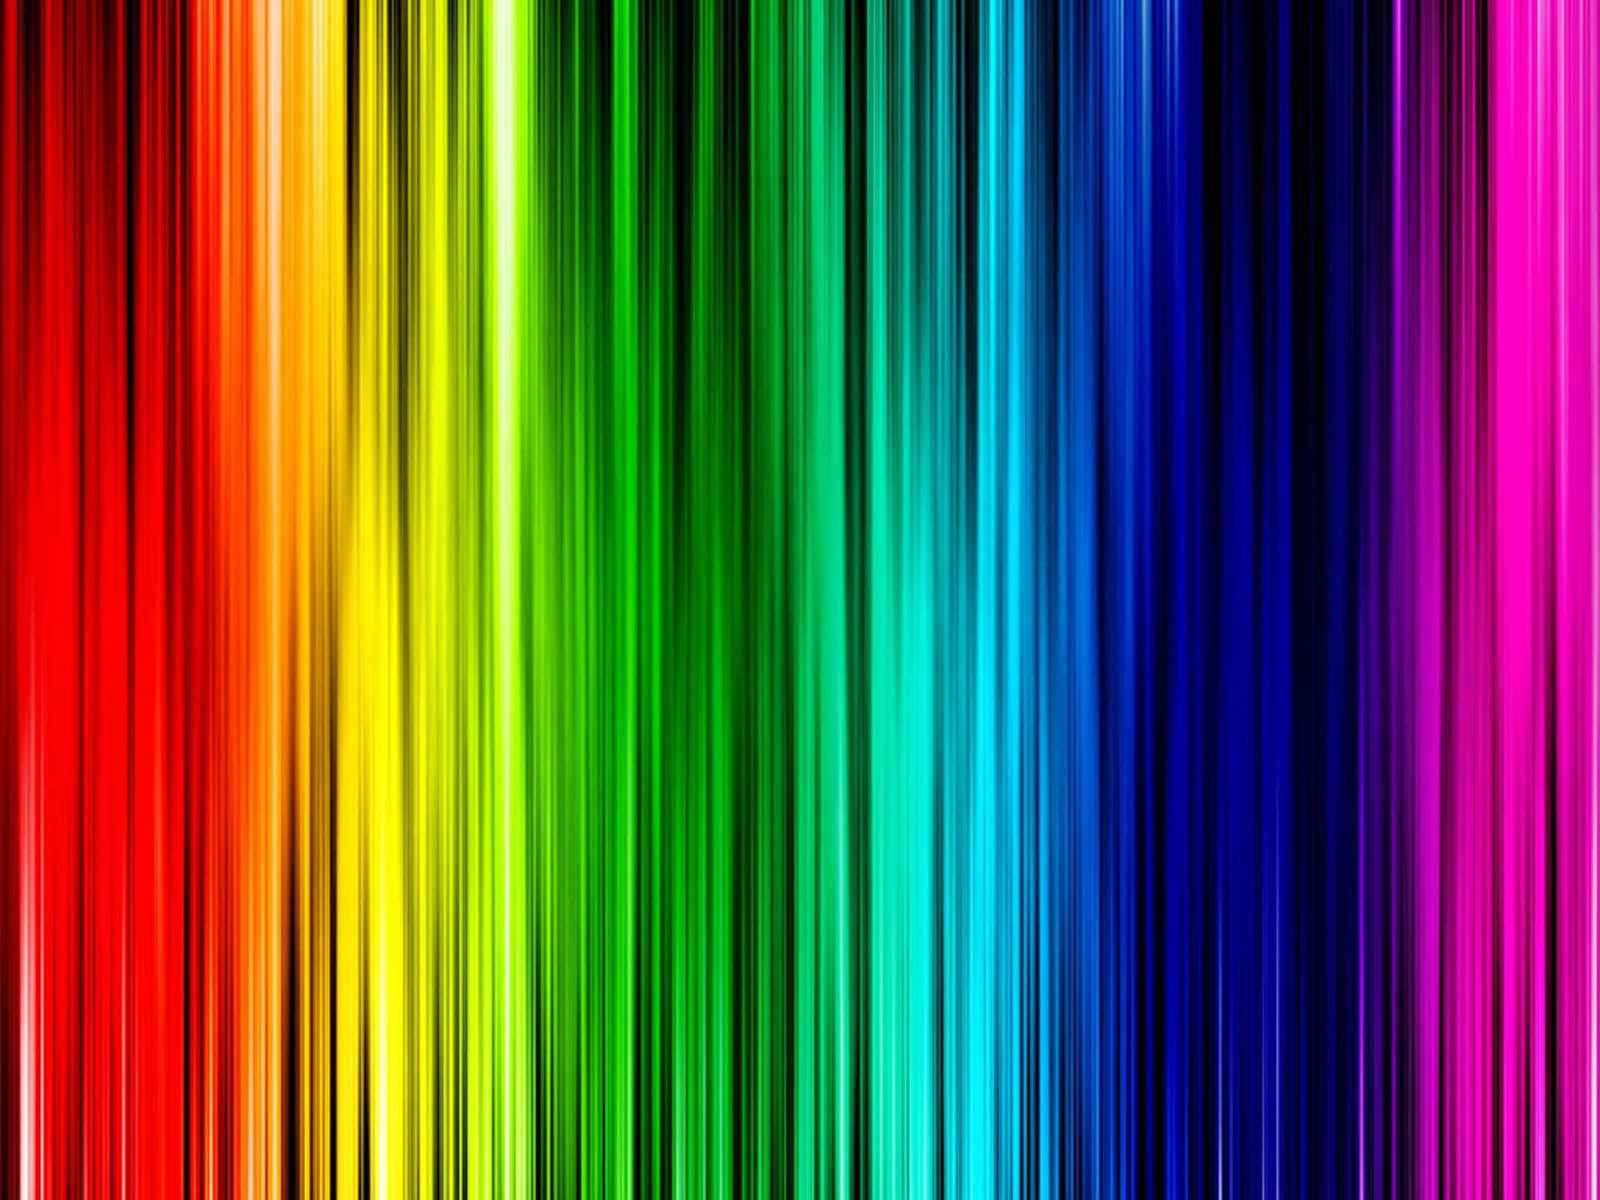 rainbow primary colors